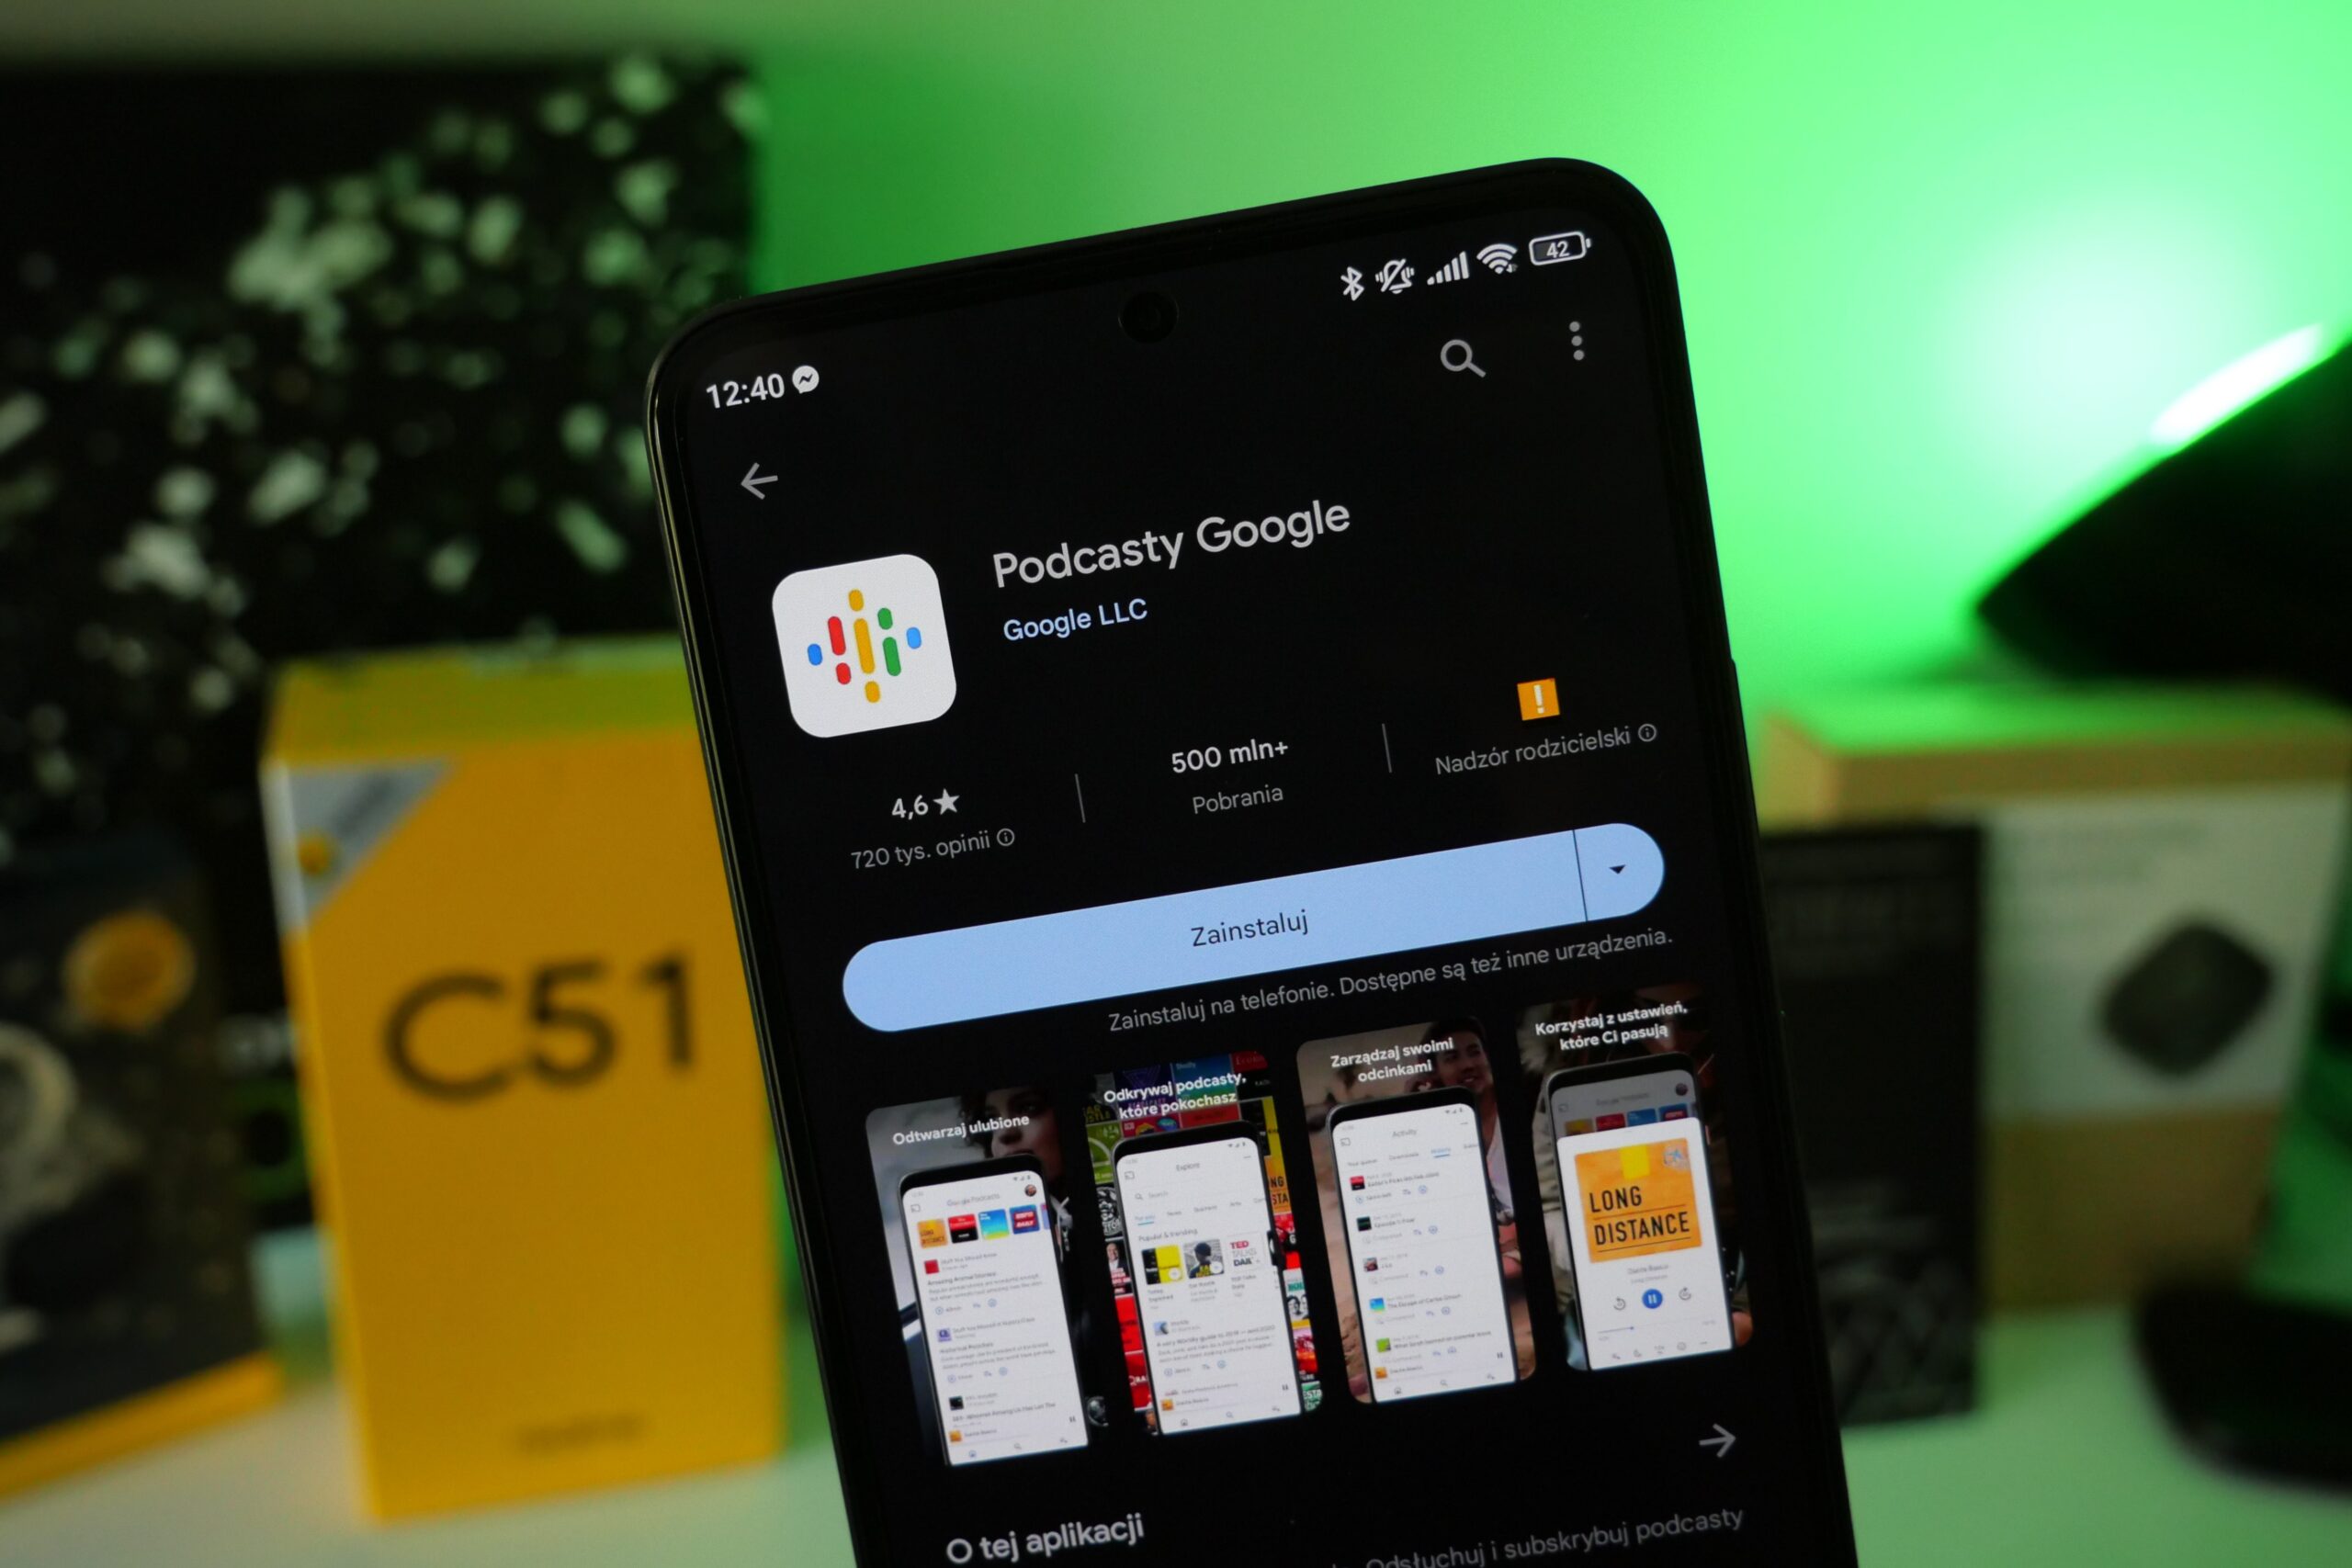 Smartfon wyświetlający stronę aplikacji "Podcasty Google" w sklepie Play, z rozmytym zielonym światłem w tle.